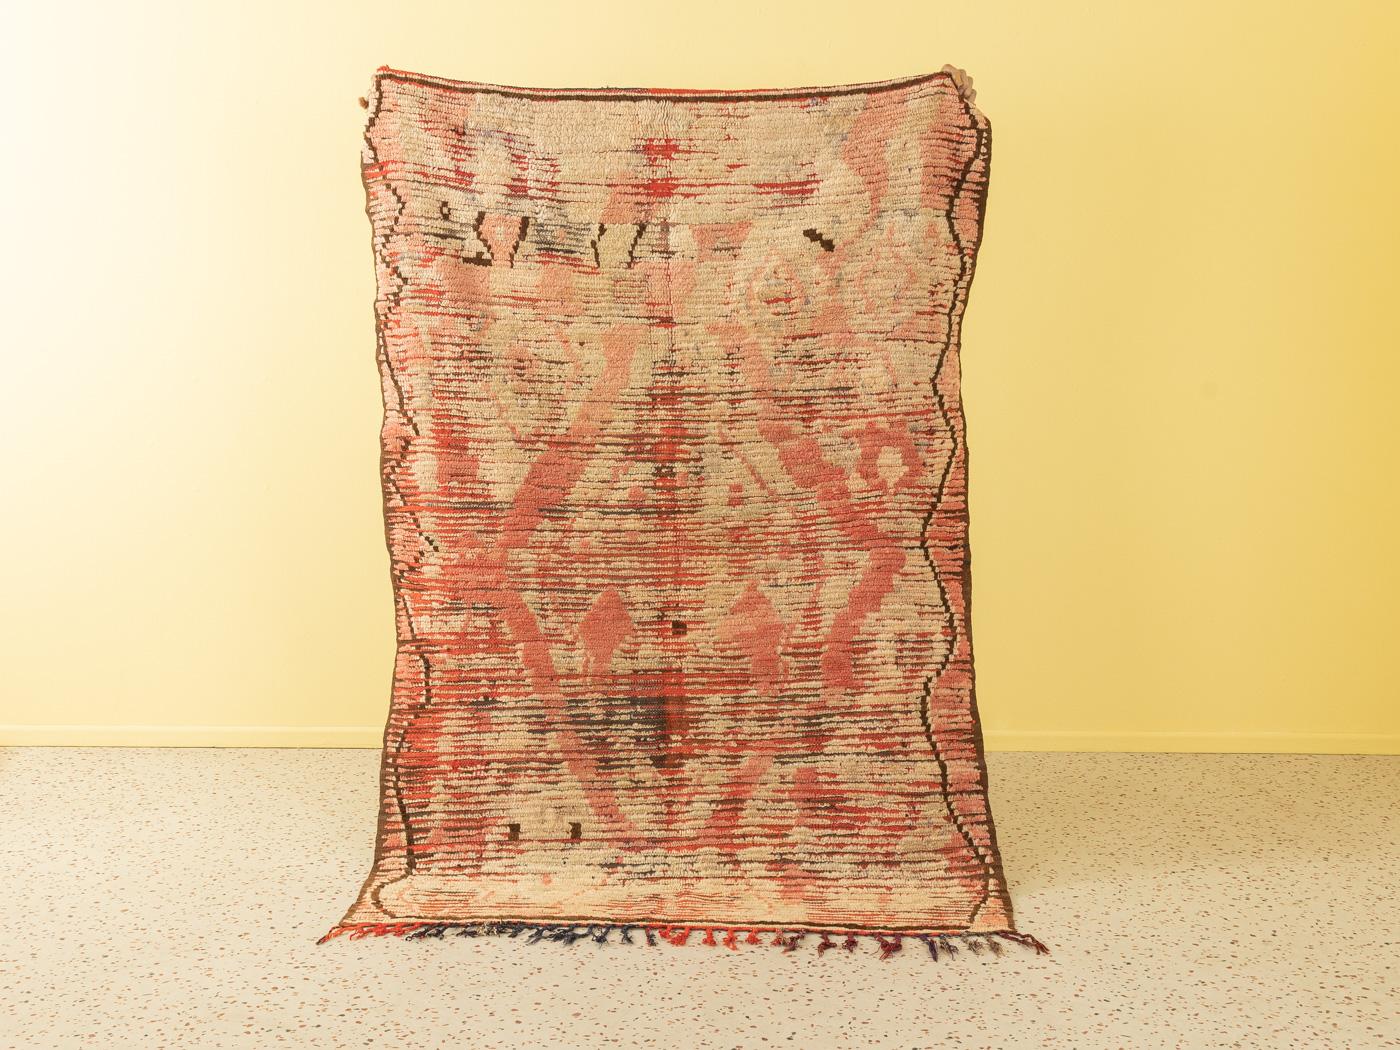 Dieser Rehamna-Teppich im Vintage-Stil besteht zu 100 % aus Wolle und ist weich und angenehm zu tragen. Unsere Berberteppiche sind handgefertigt, ein Knoten nach dem anderen. Jeder unserer Berberteppiche ist ein langlebiges Einzelstück, das auf